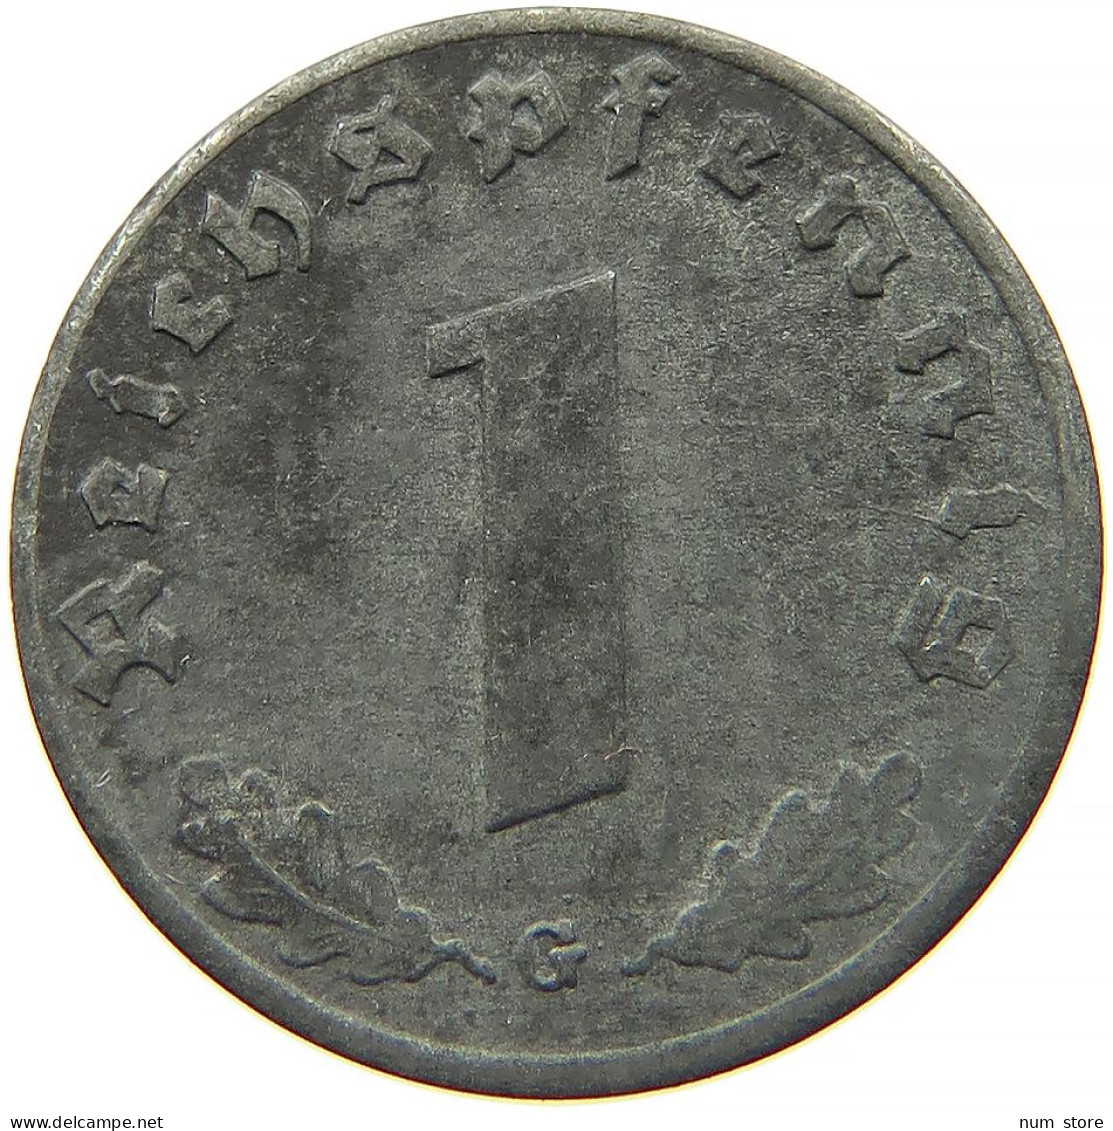 GERMANY 1 REICHSPFENNIG 1944 G #s091 1135 - 1 Reichspfennig